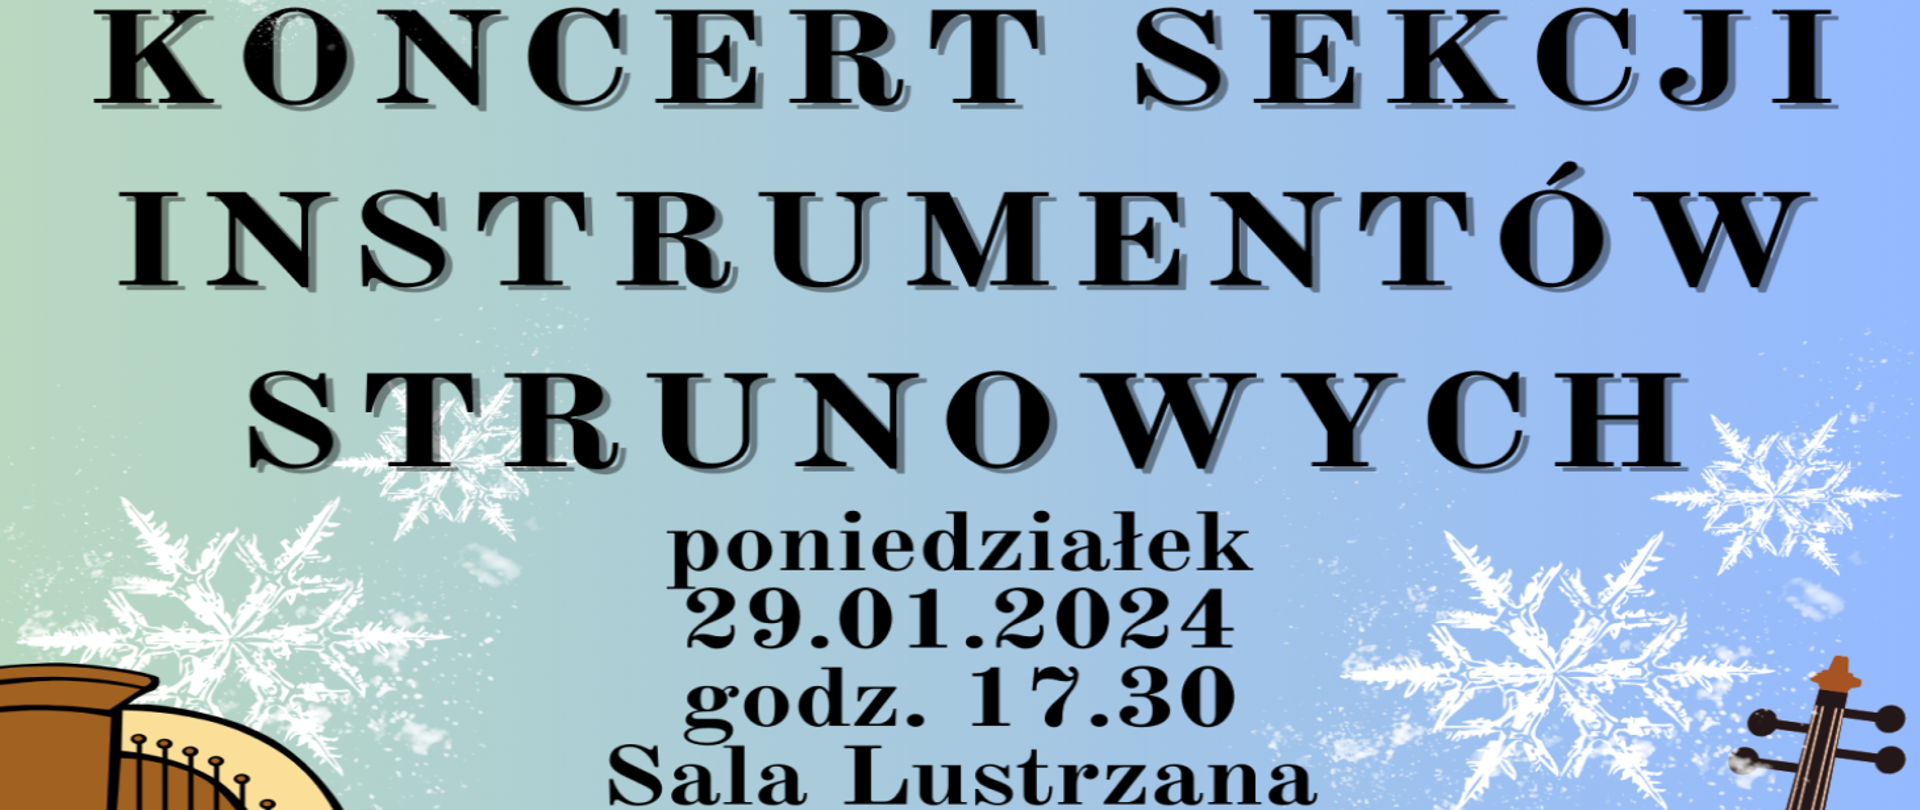 Niebieski baner z płatkami śniegu prezentuje napis: Koncert sekcji instrumentów Strunowych. 